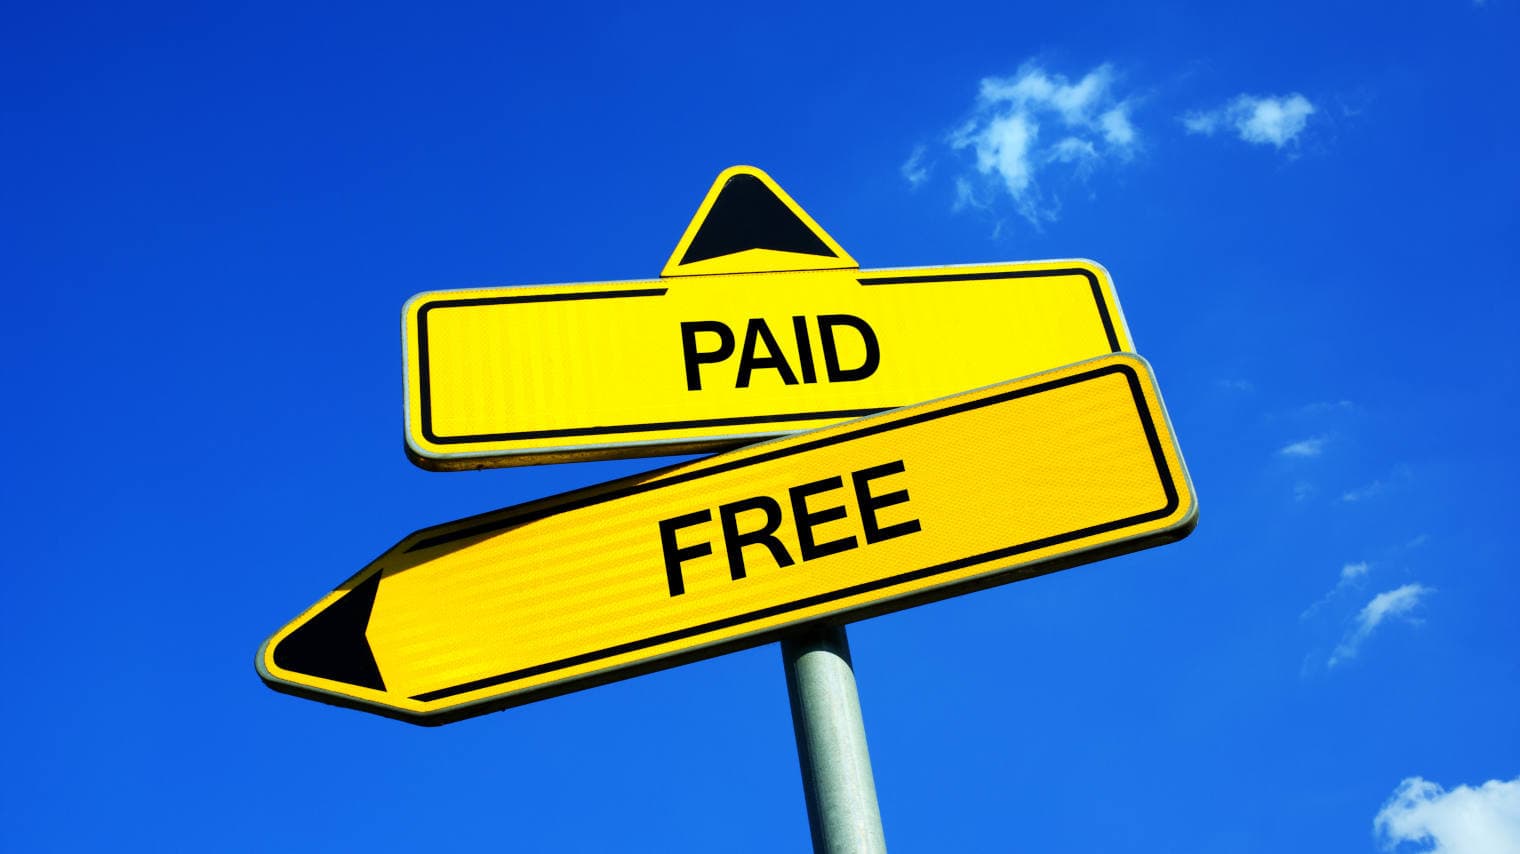 paid vs free vpn